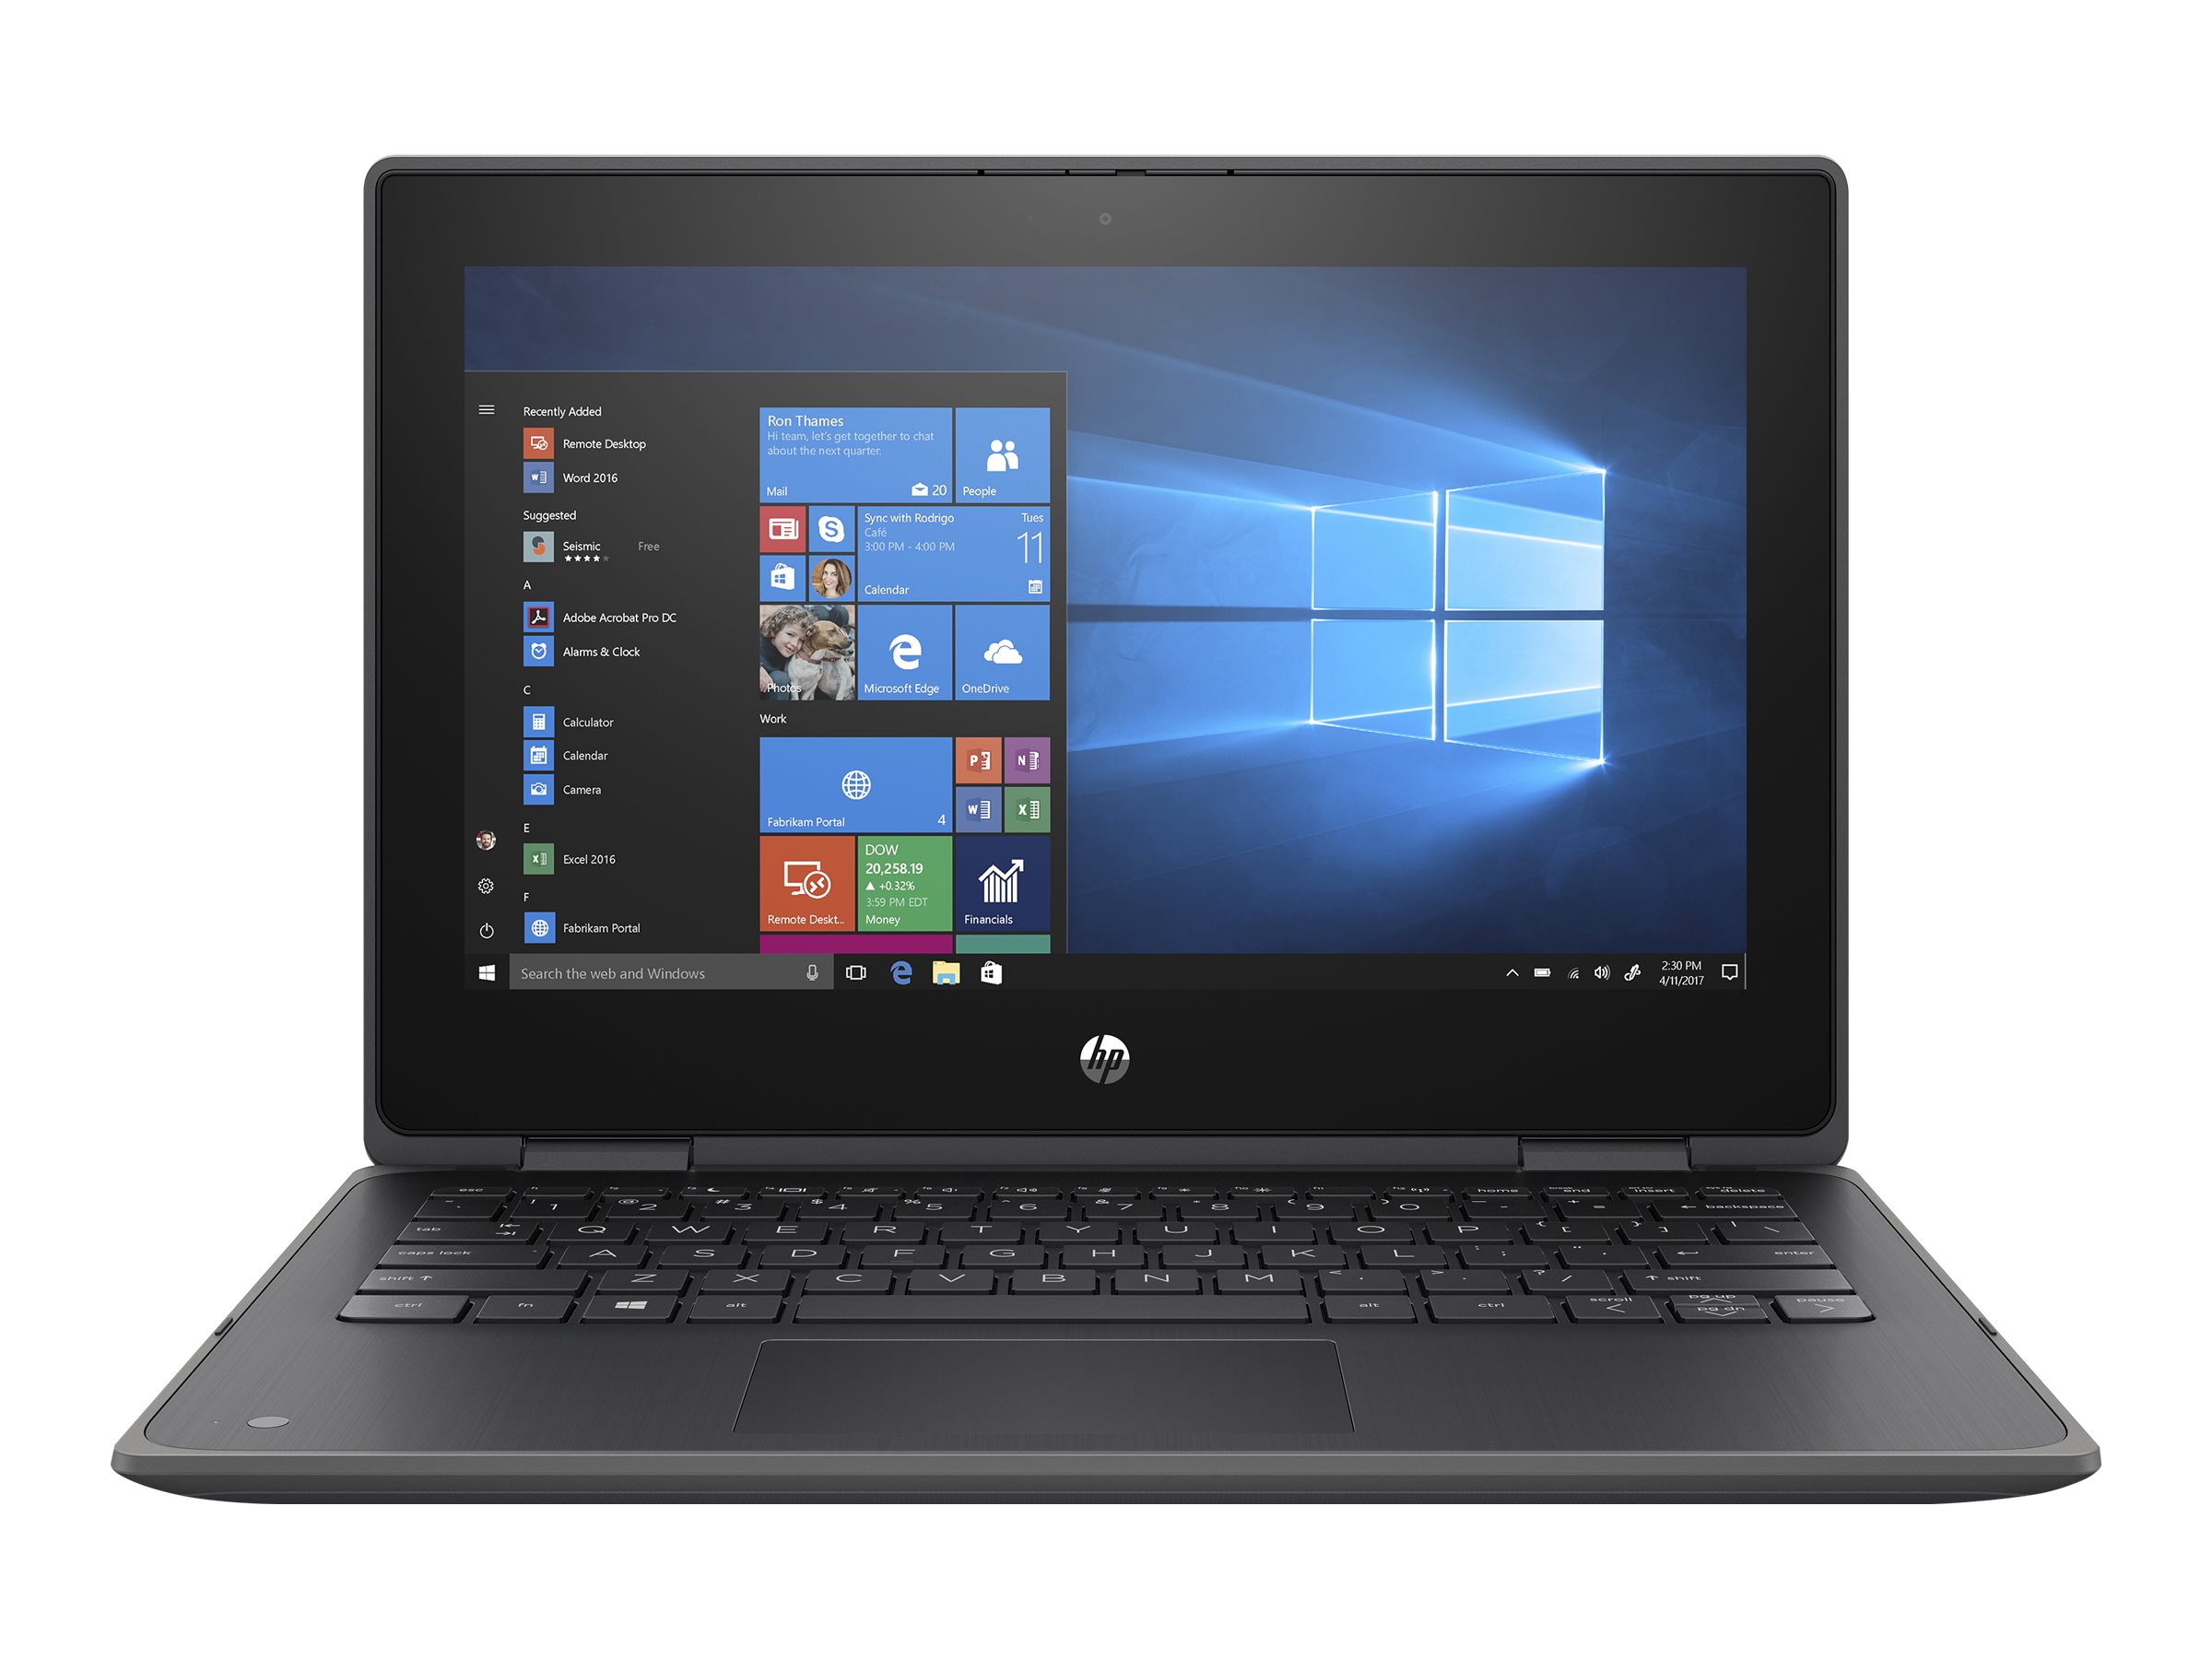 HP ProBook x360 11 G6 Education Edition Notebook - Conception inclinable - Intel Core i3 - 10110Y / jusqu'à 4 GHz - Win 10 Pro 64 bits - UHD Graphics - 8 Go RAM - 256 Go SSD NVMe - 11.6" IPS écran tactile 1366 x 768 (HD) - Wi-Fi 6 - gris ardoise - clavier : Français - 2X8A3EA#ABF - Ordinateurs portables